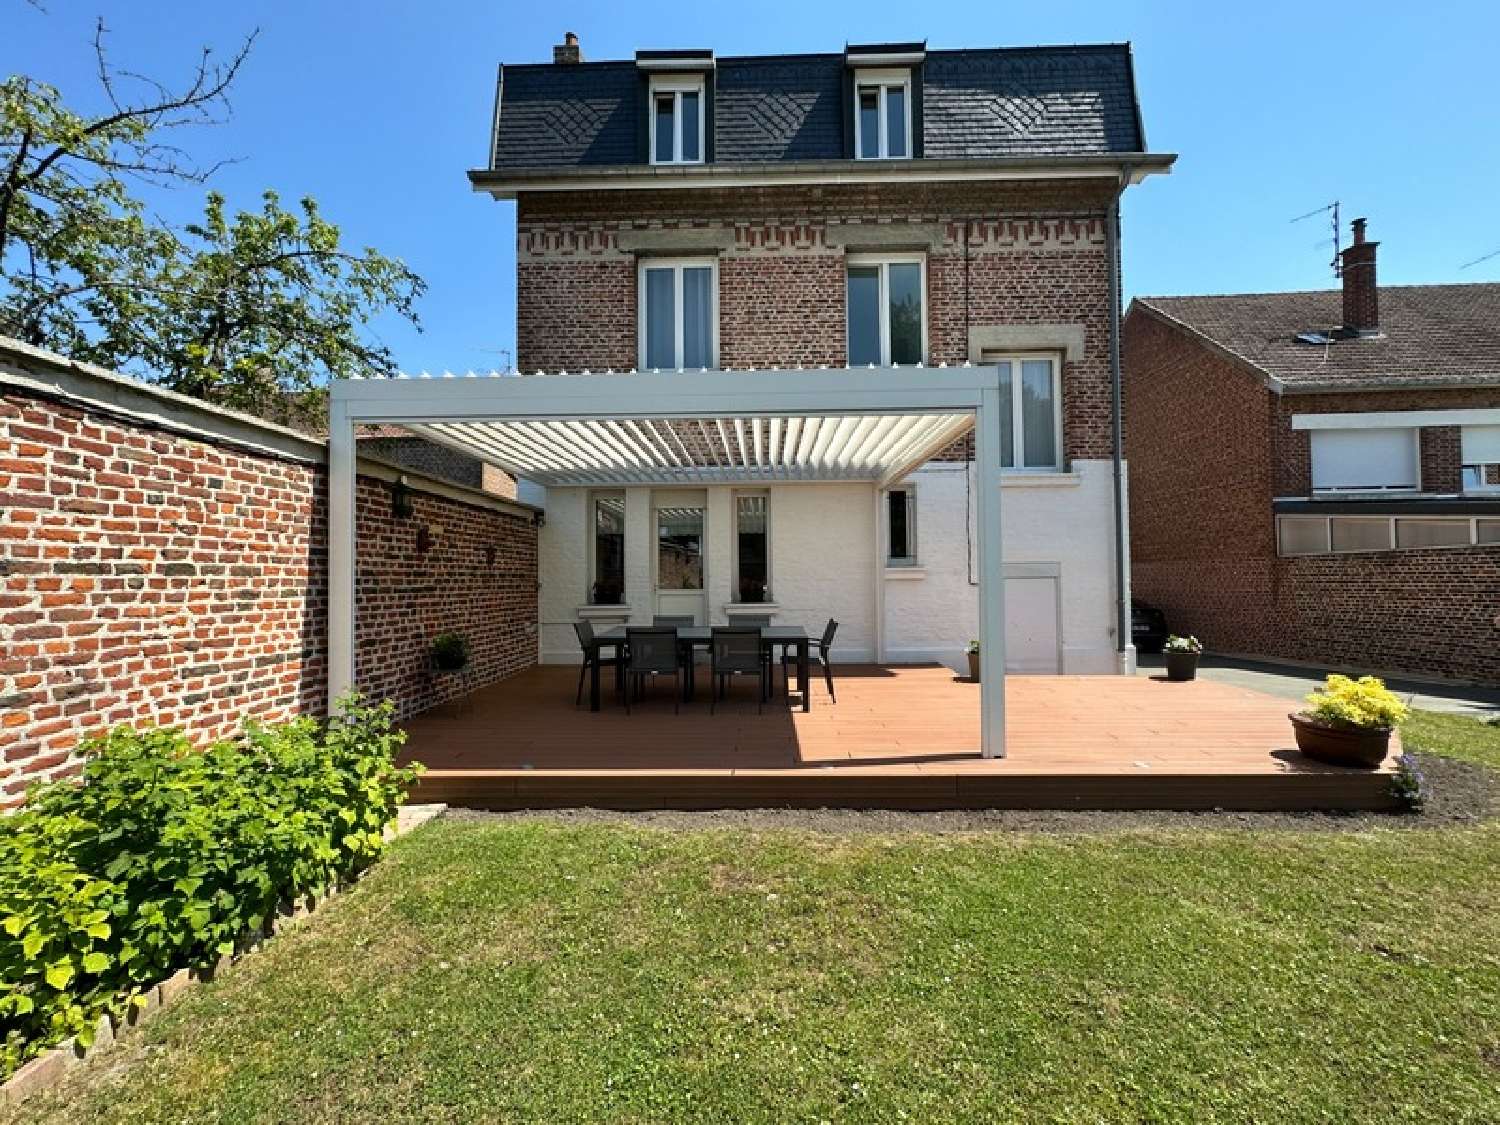  à vendre maison Biache-Saint-Vaast Pas-de-Calais 1